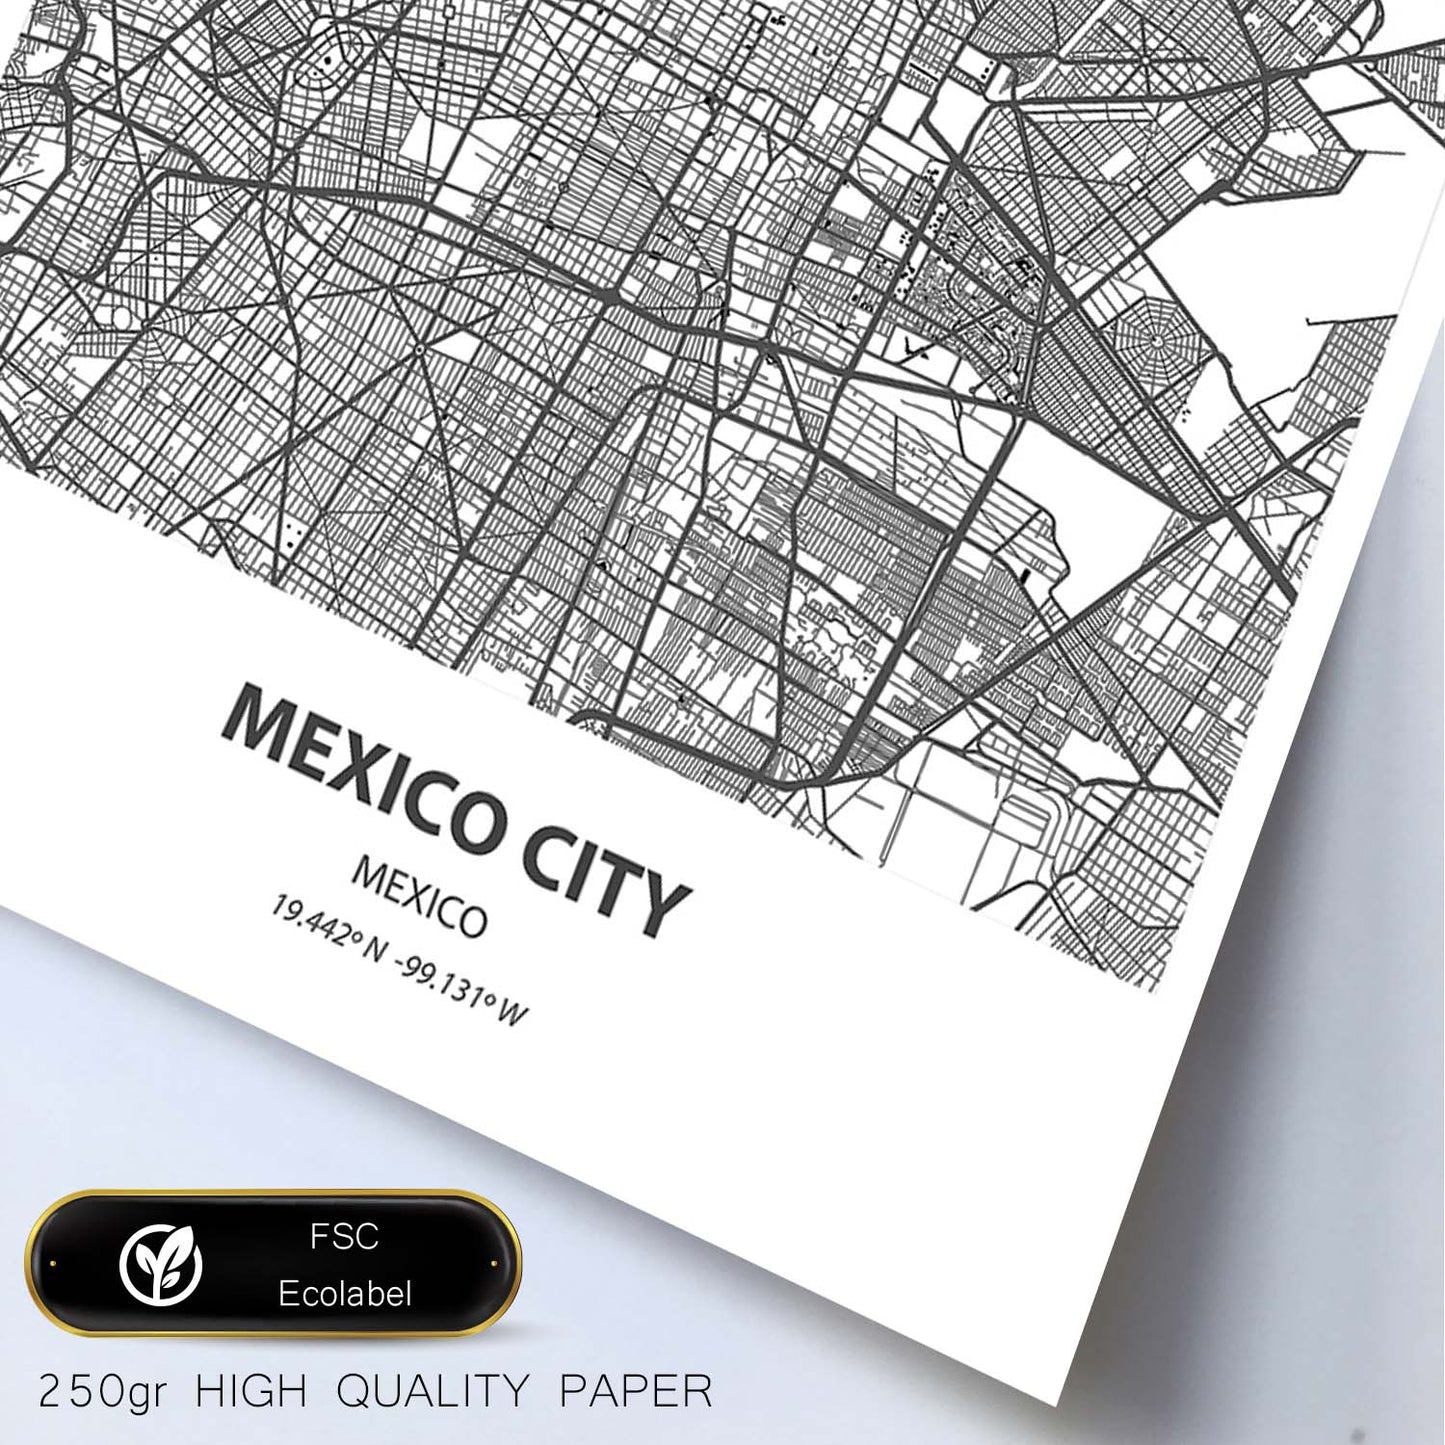 Poster con mapa de Mexico City - Mexico. Láminas de ciudades de Latinoamérica con mares y ríos en color negro.-Artwork-Nacnic-Nacnic Estudio SL